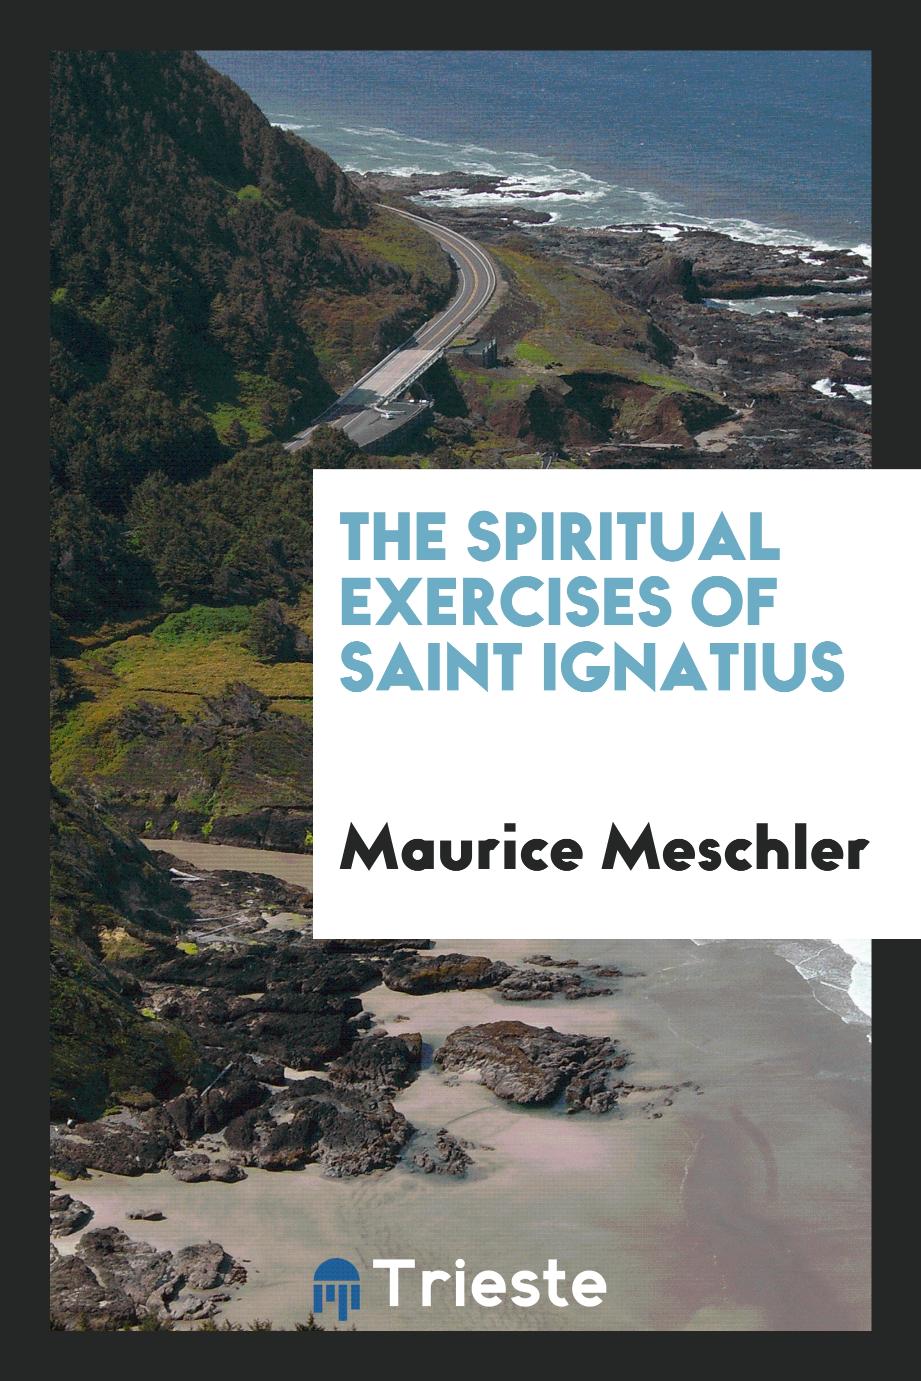 The spiritual exercises of Saint Ignatius